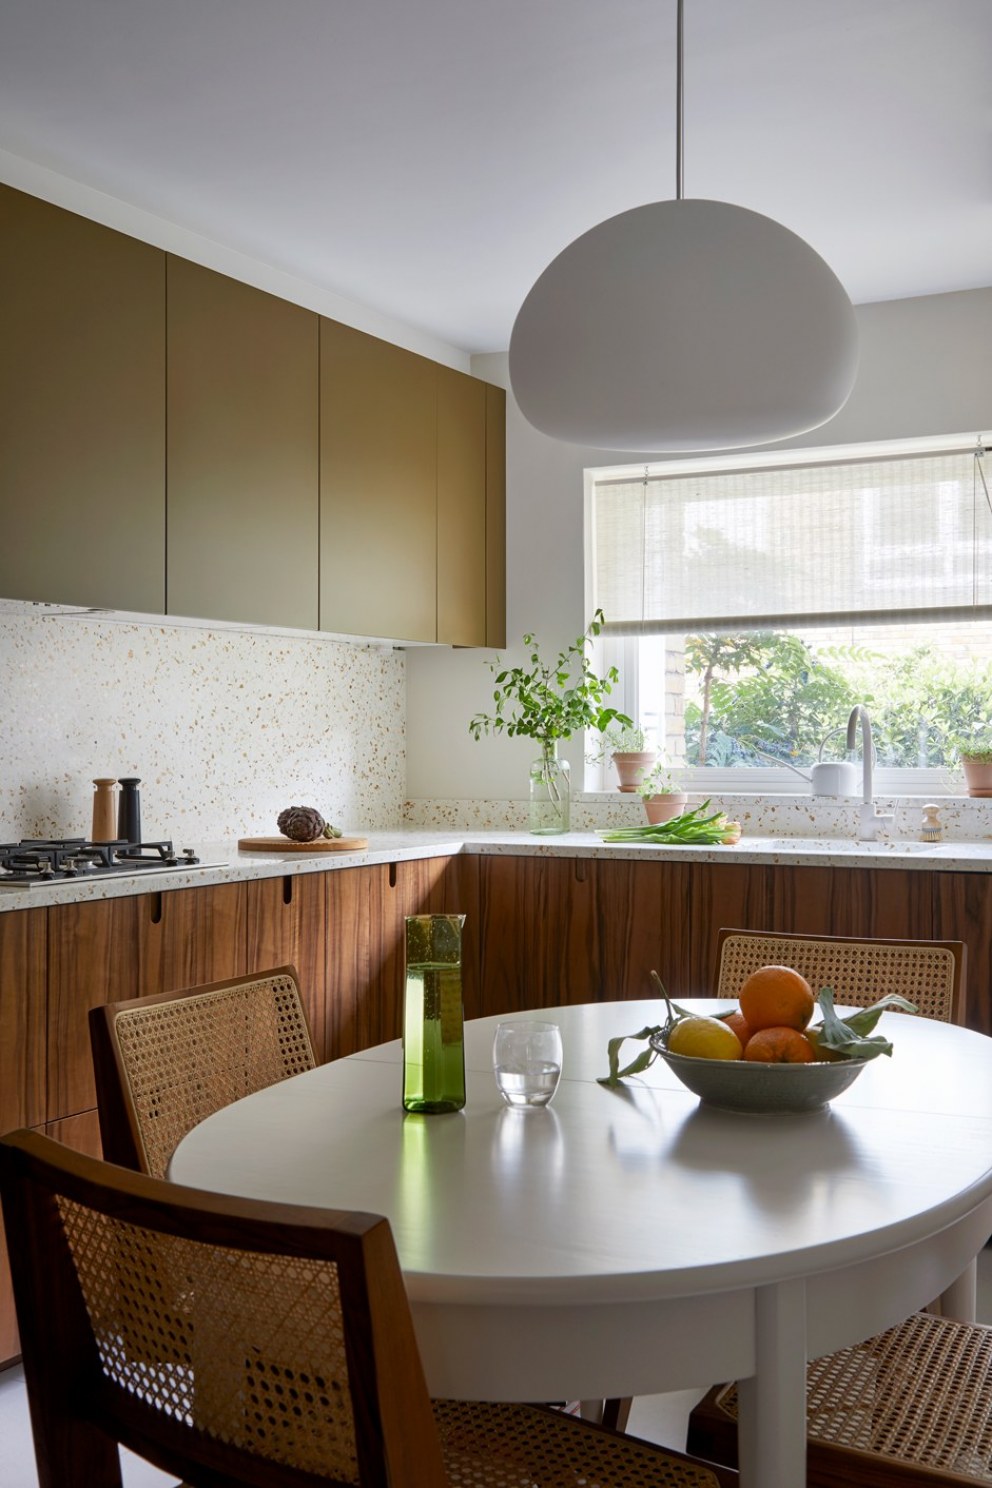 Wandsworth Maisonette | Kitchen | Interior Designers